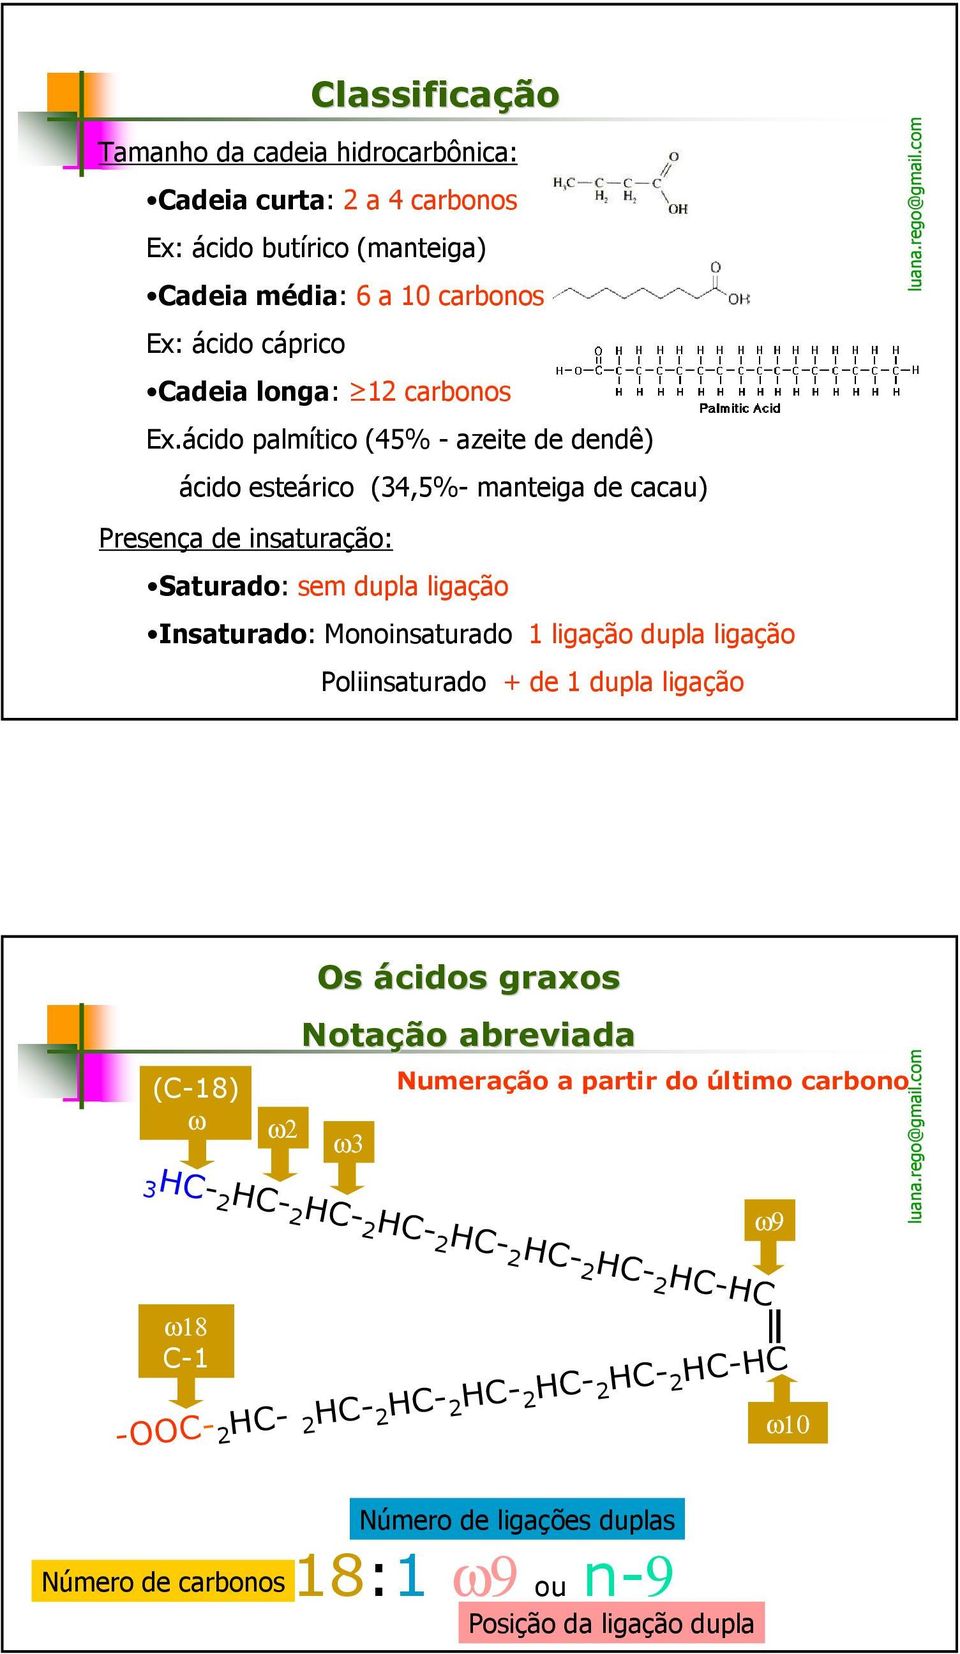 Monoinsaturado 1 ligação dupla ligação Poliinsaturado + de 1 dupla ligação (C-18) ω ω2 Os ácidos graxos Notação abreviada ω3 Numeração a partir do último carbono 3HC- 2 HC-